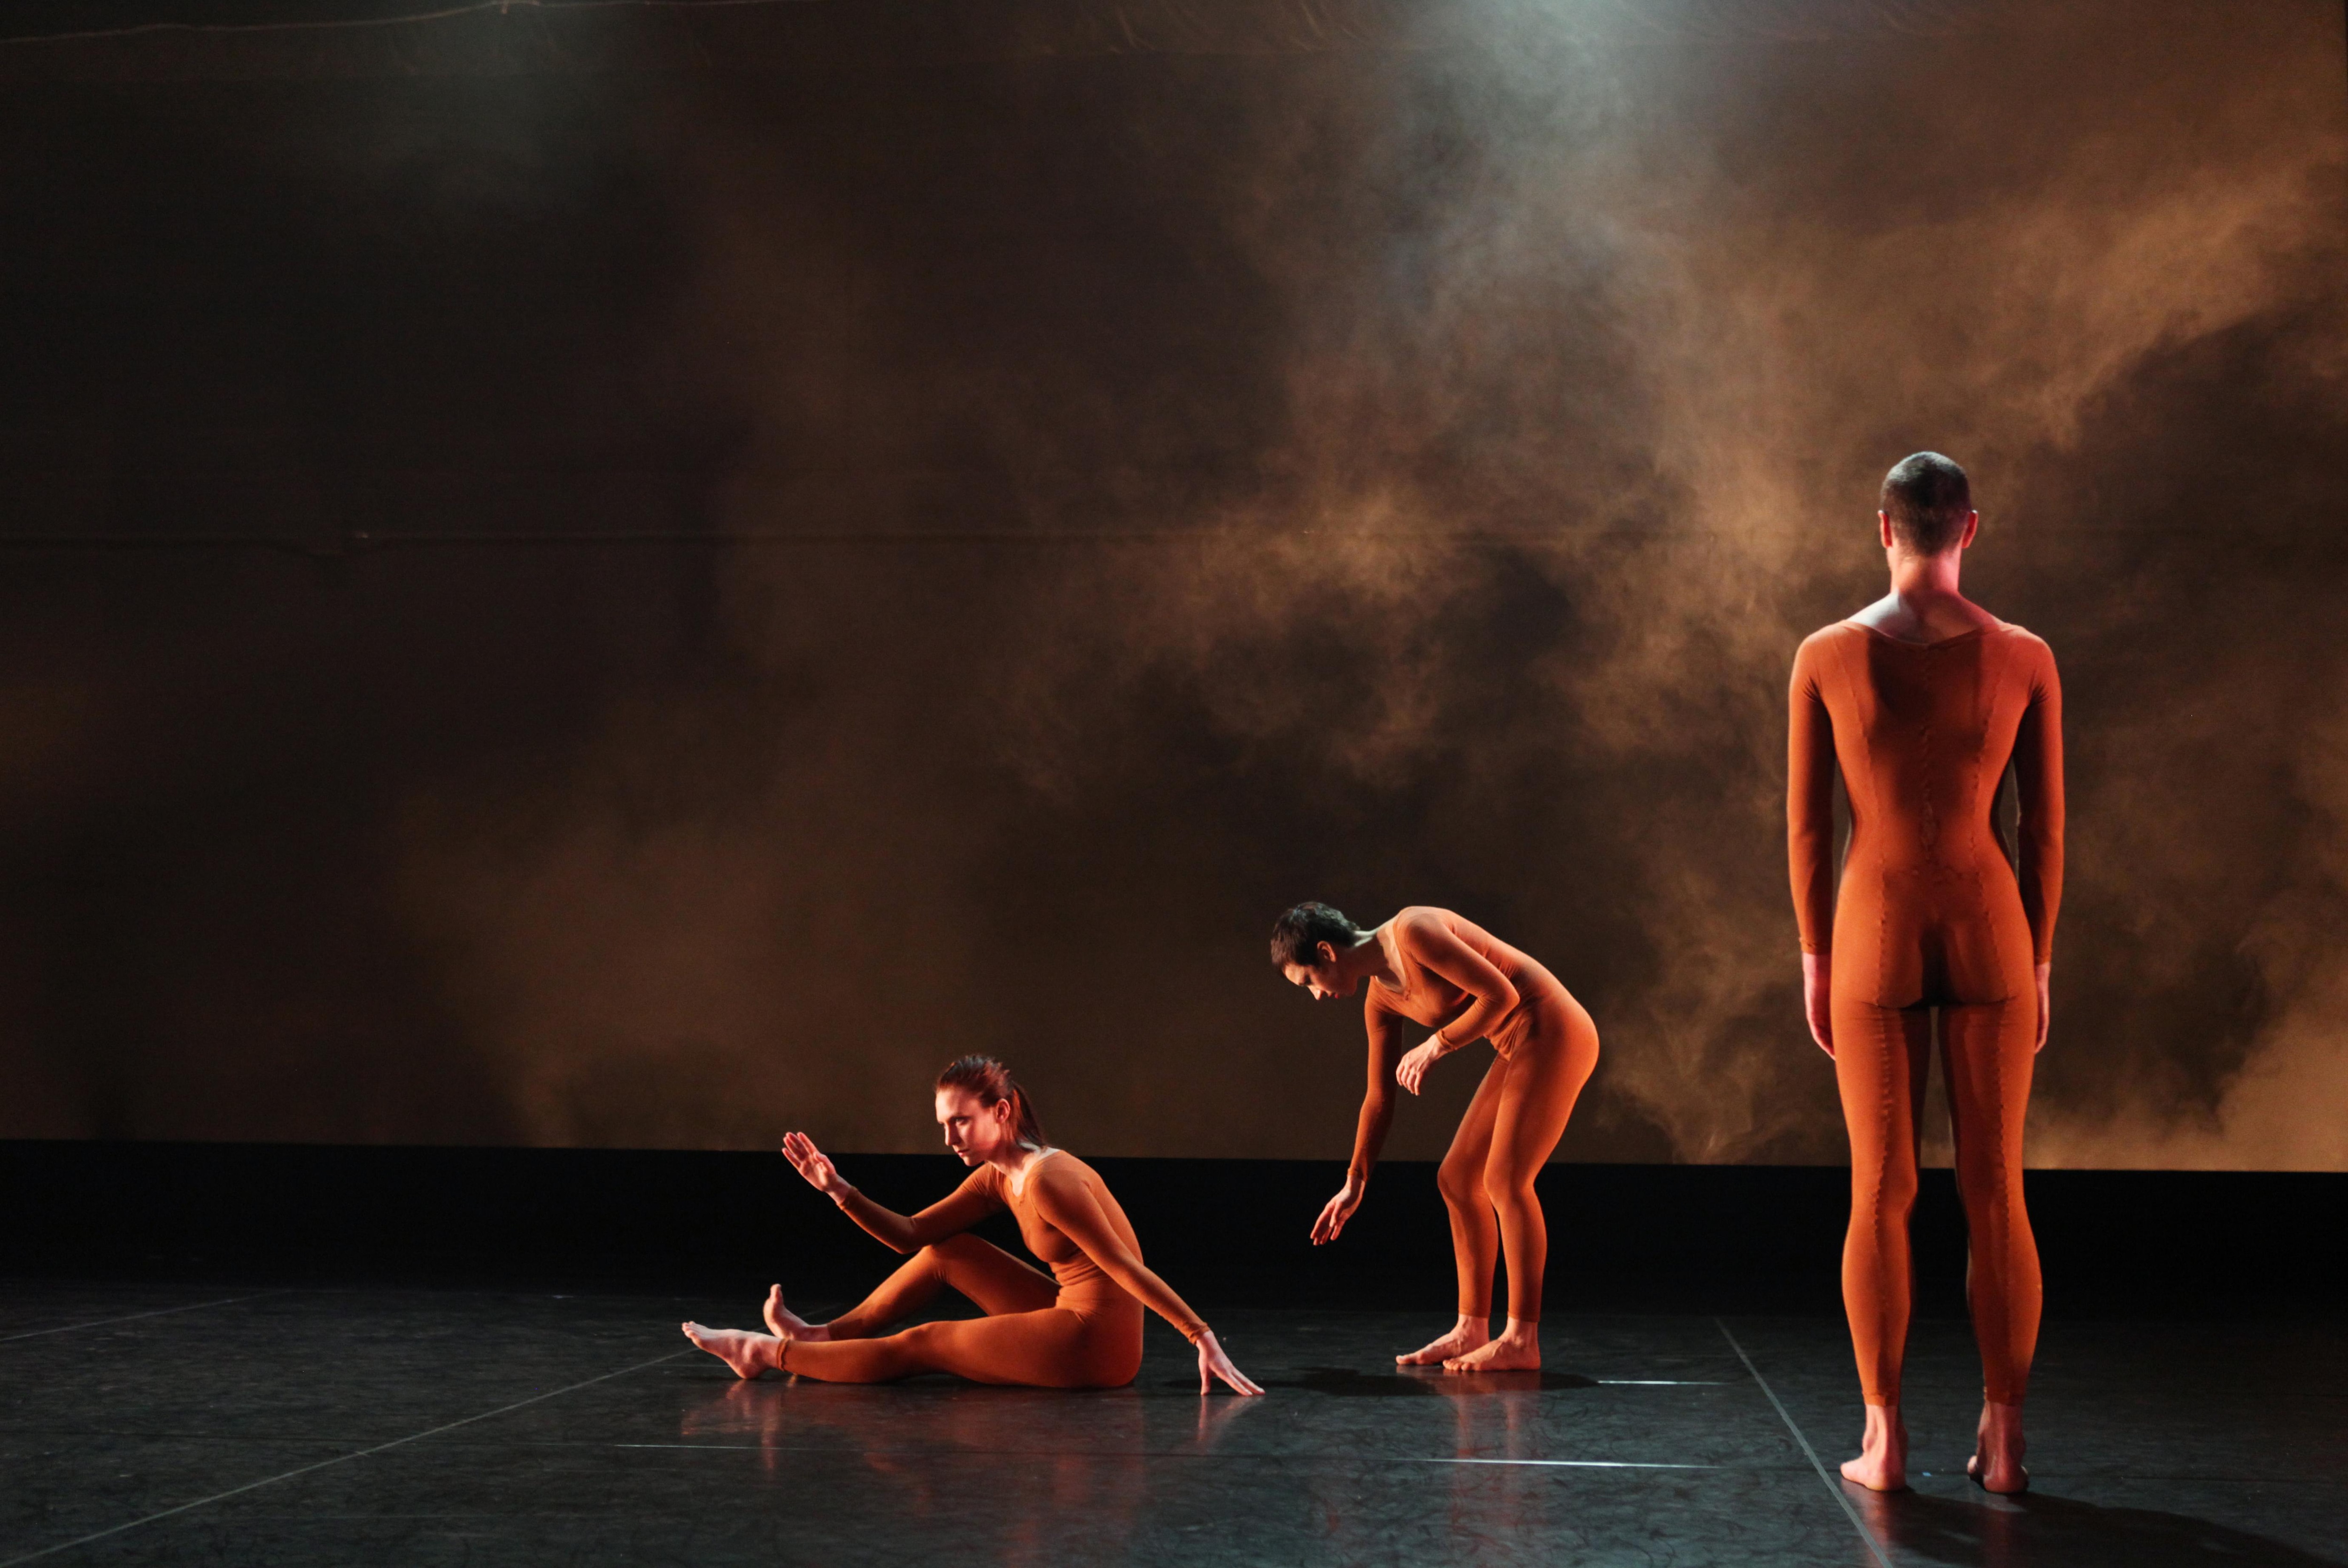 Trois danseurs sur scène, le premier assis avec les jambes au sol et un bras sur le genou, le deuxième incliné vers l’avant et le troisième debout de dos